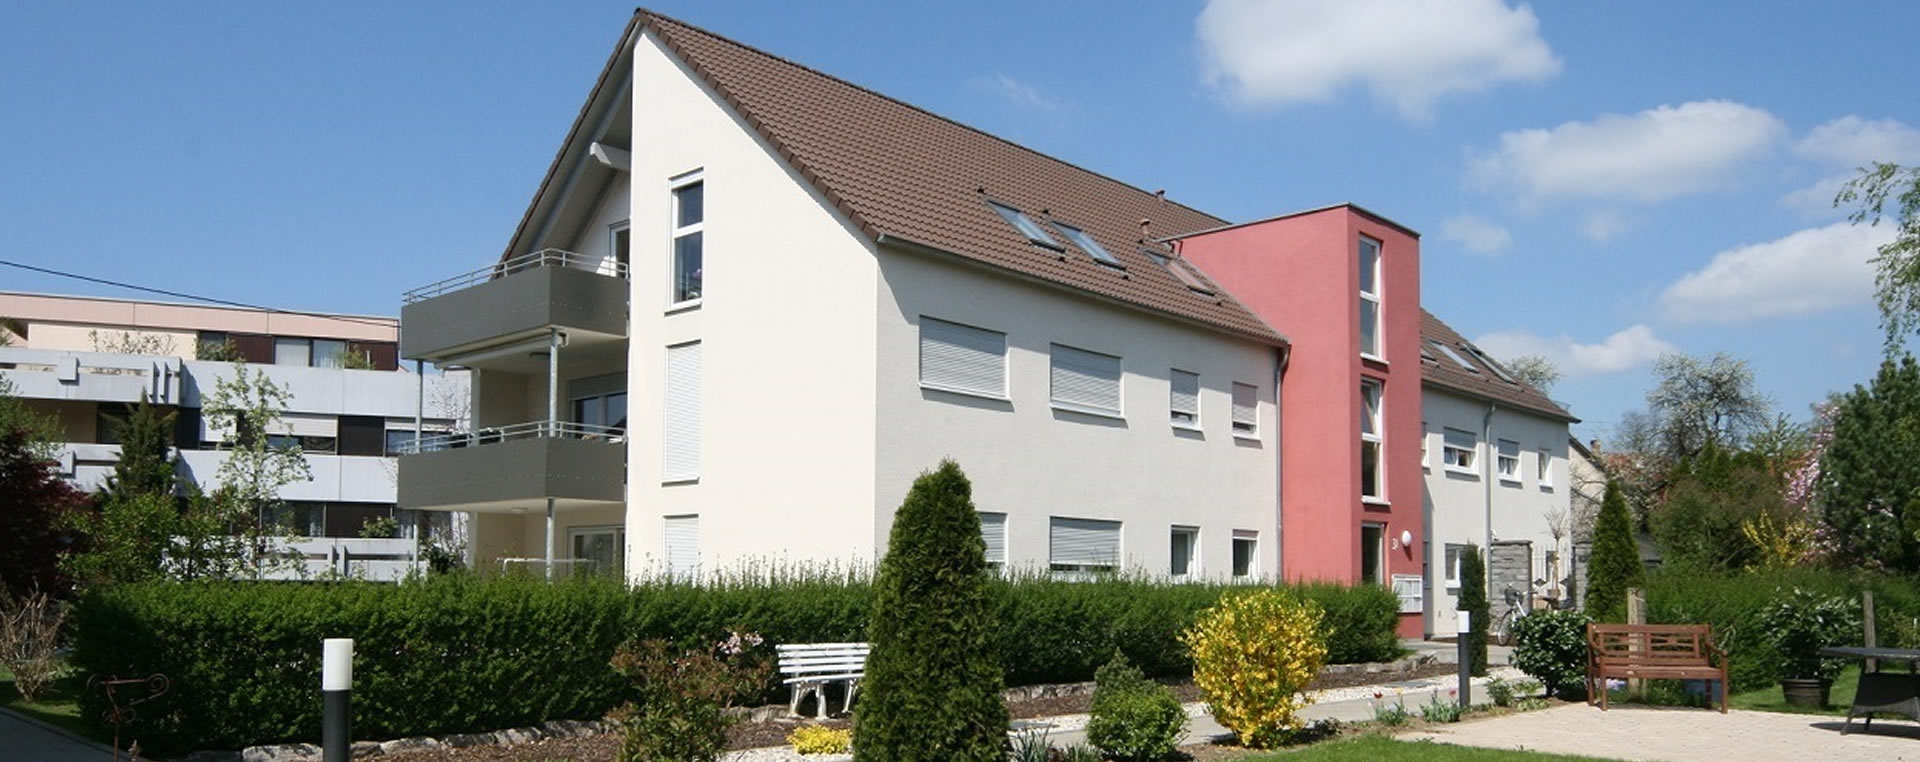 Haus oder Wohnung mieten bei Kirchheim unter Teck - Mietwohnungen & Häuser zur Miete